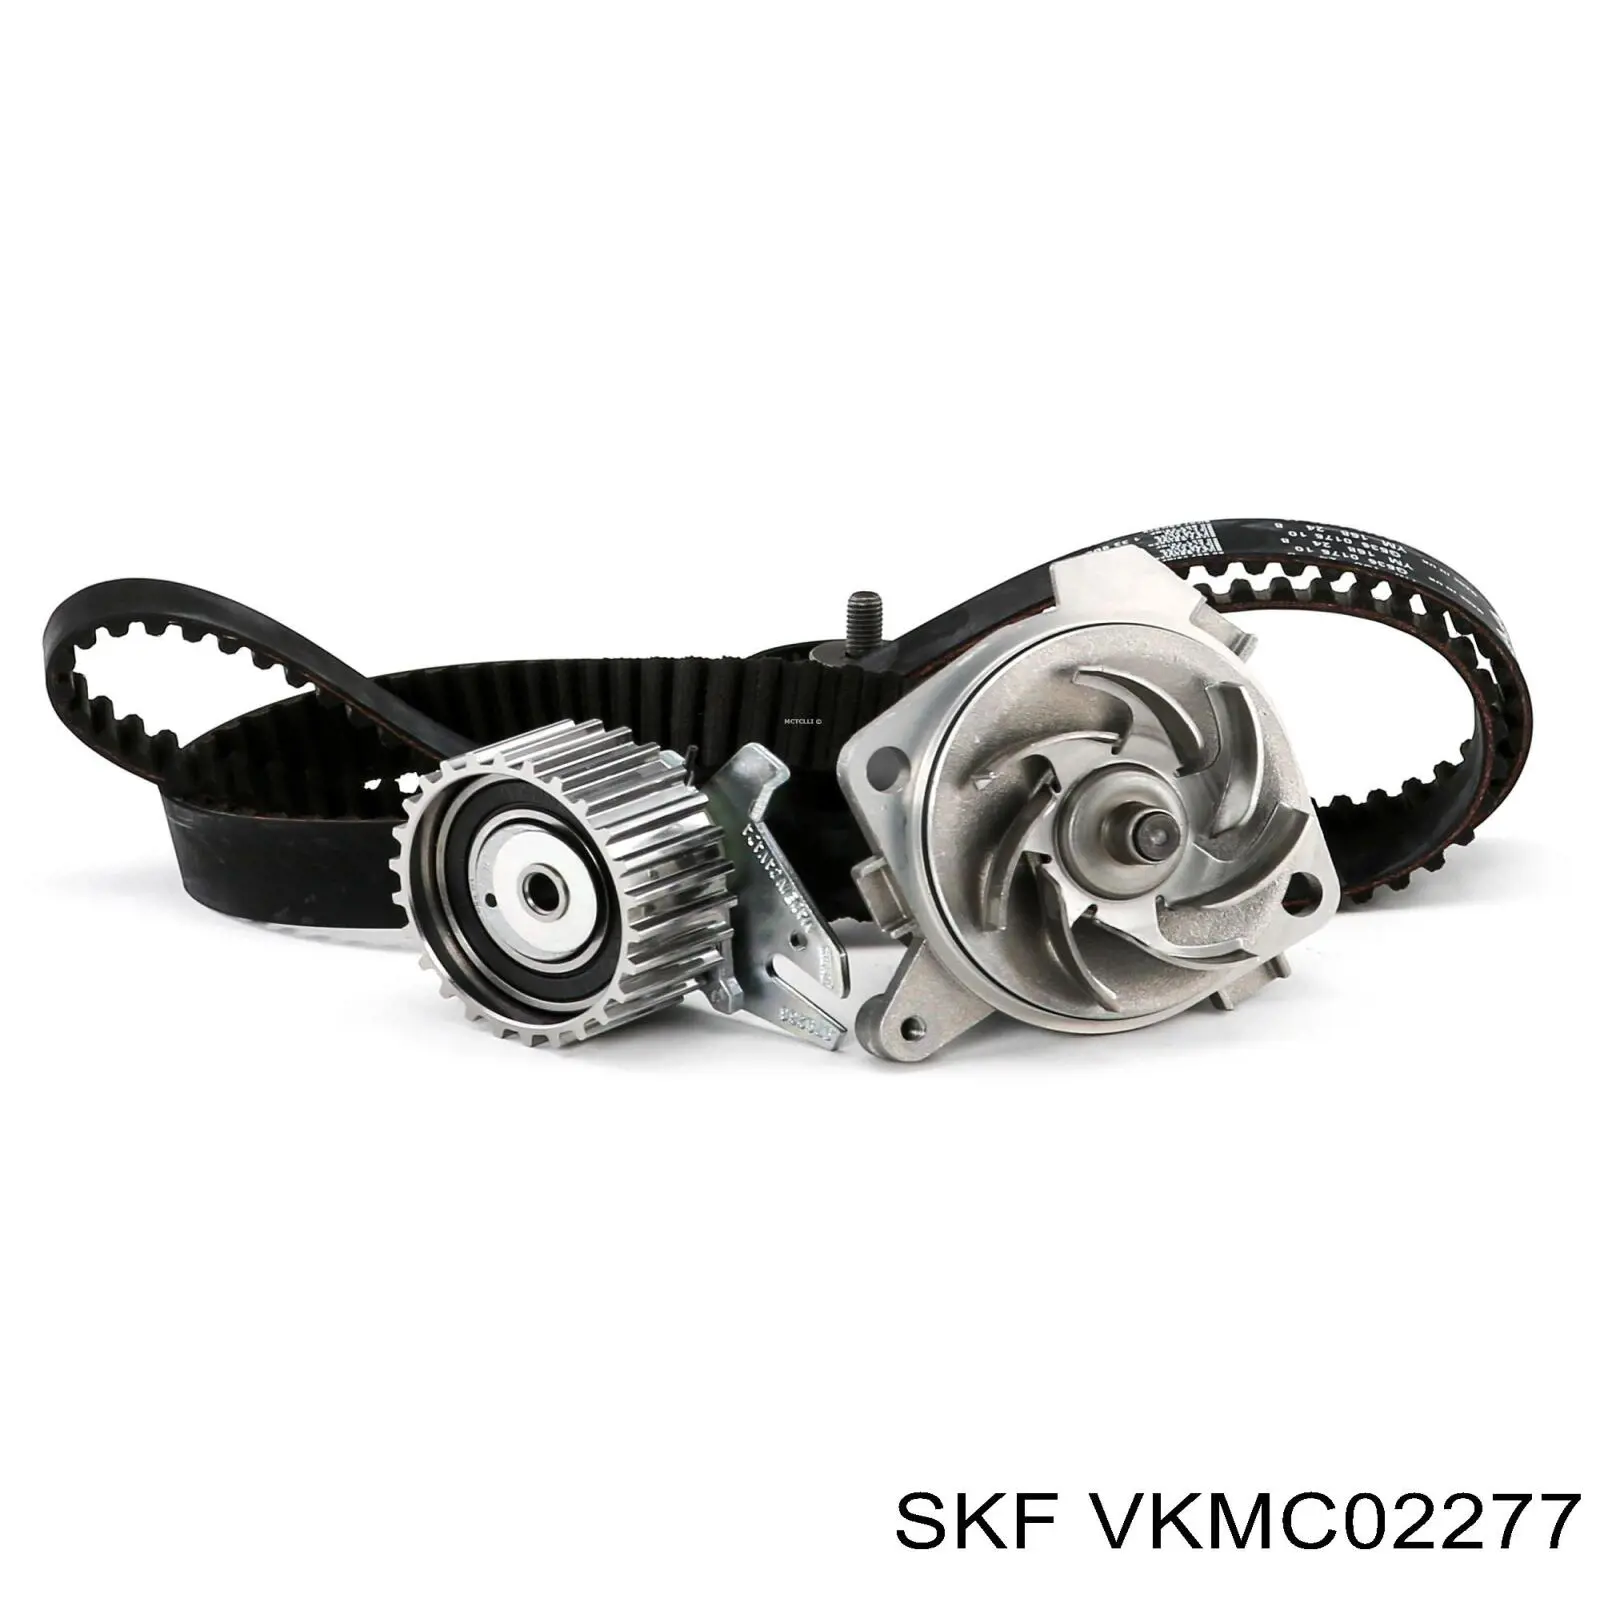 VKMC 02277 SKF kit de distribución